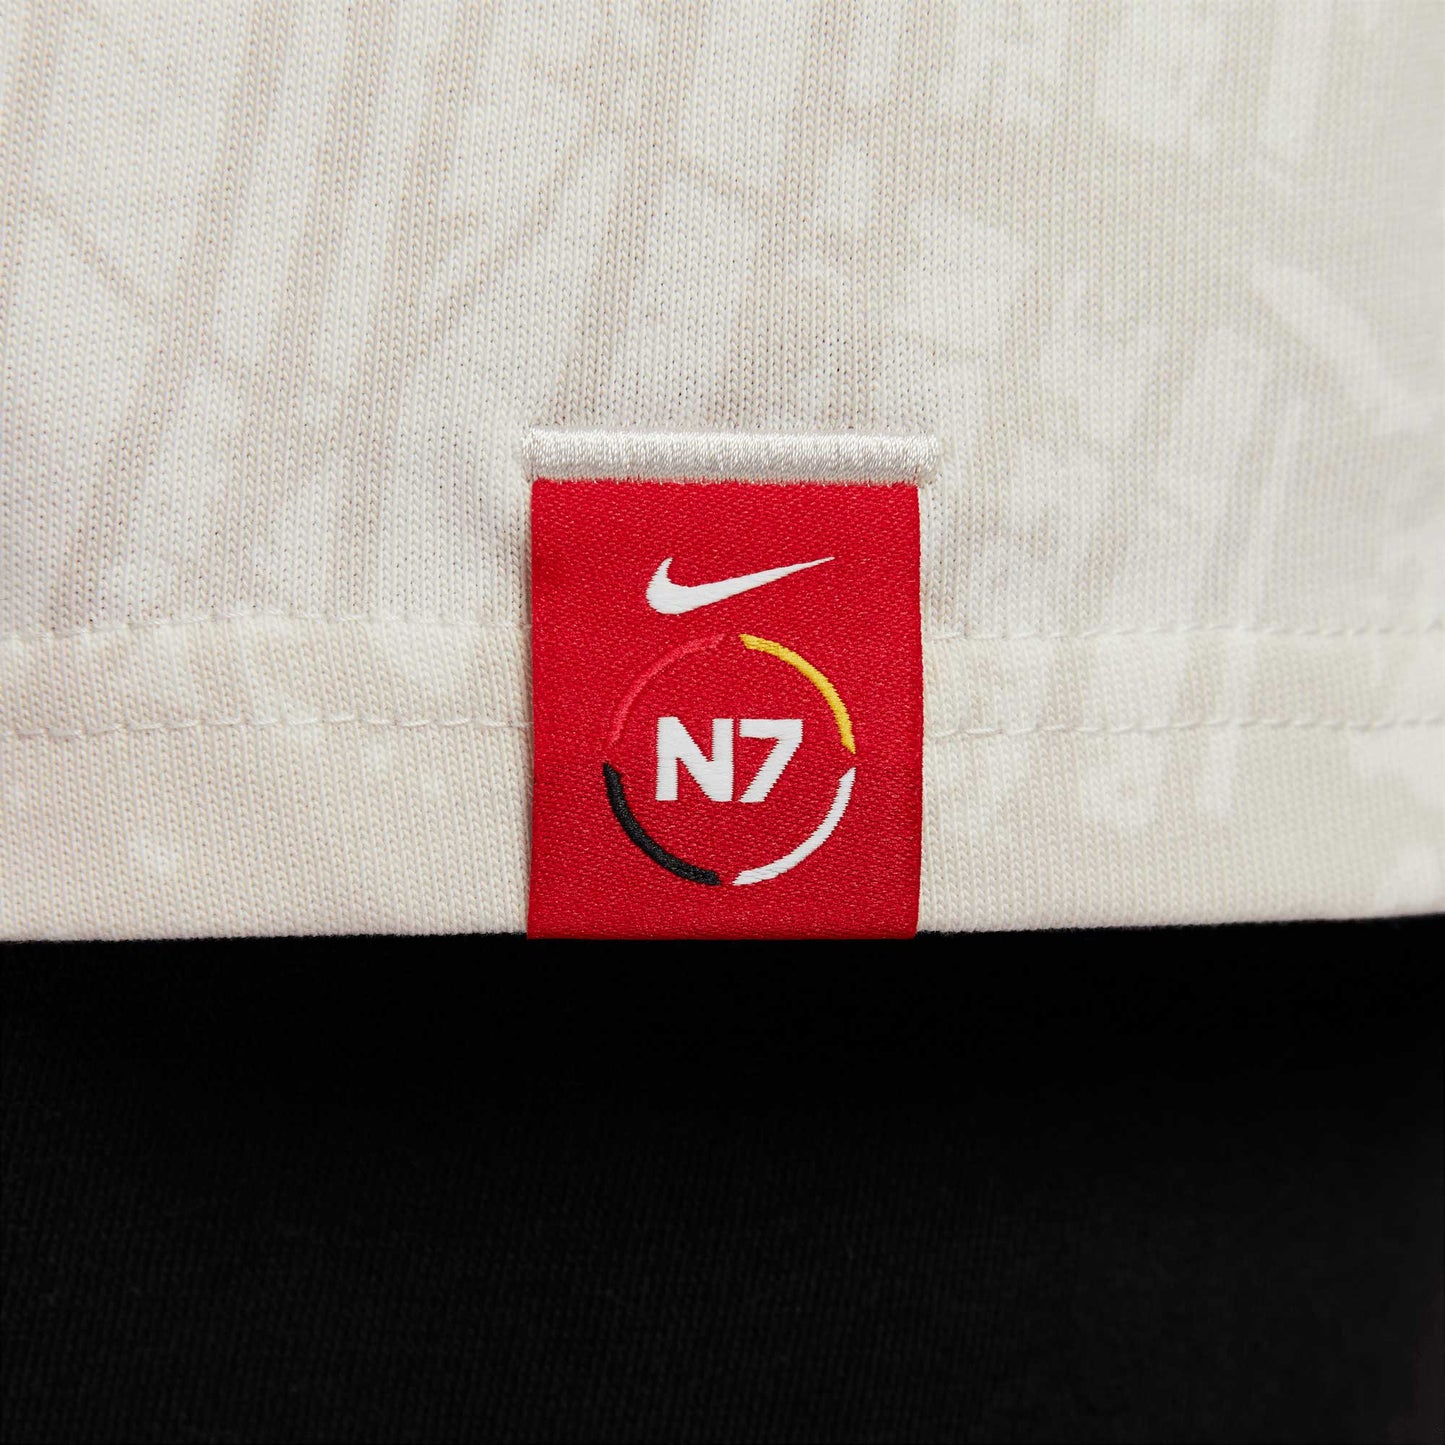 Nike SB N7 Max 90 T-Shirt, sail - Tiki Room Skateboards - 7